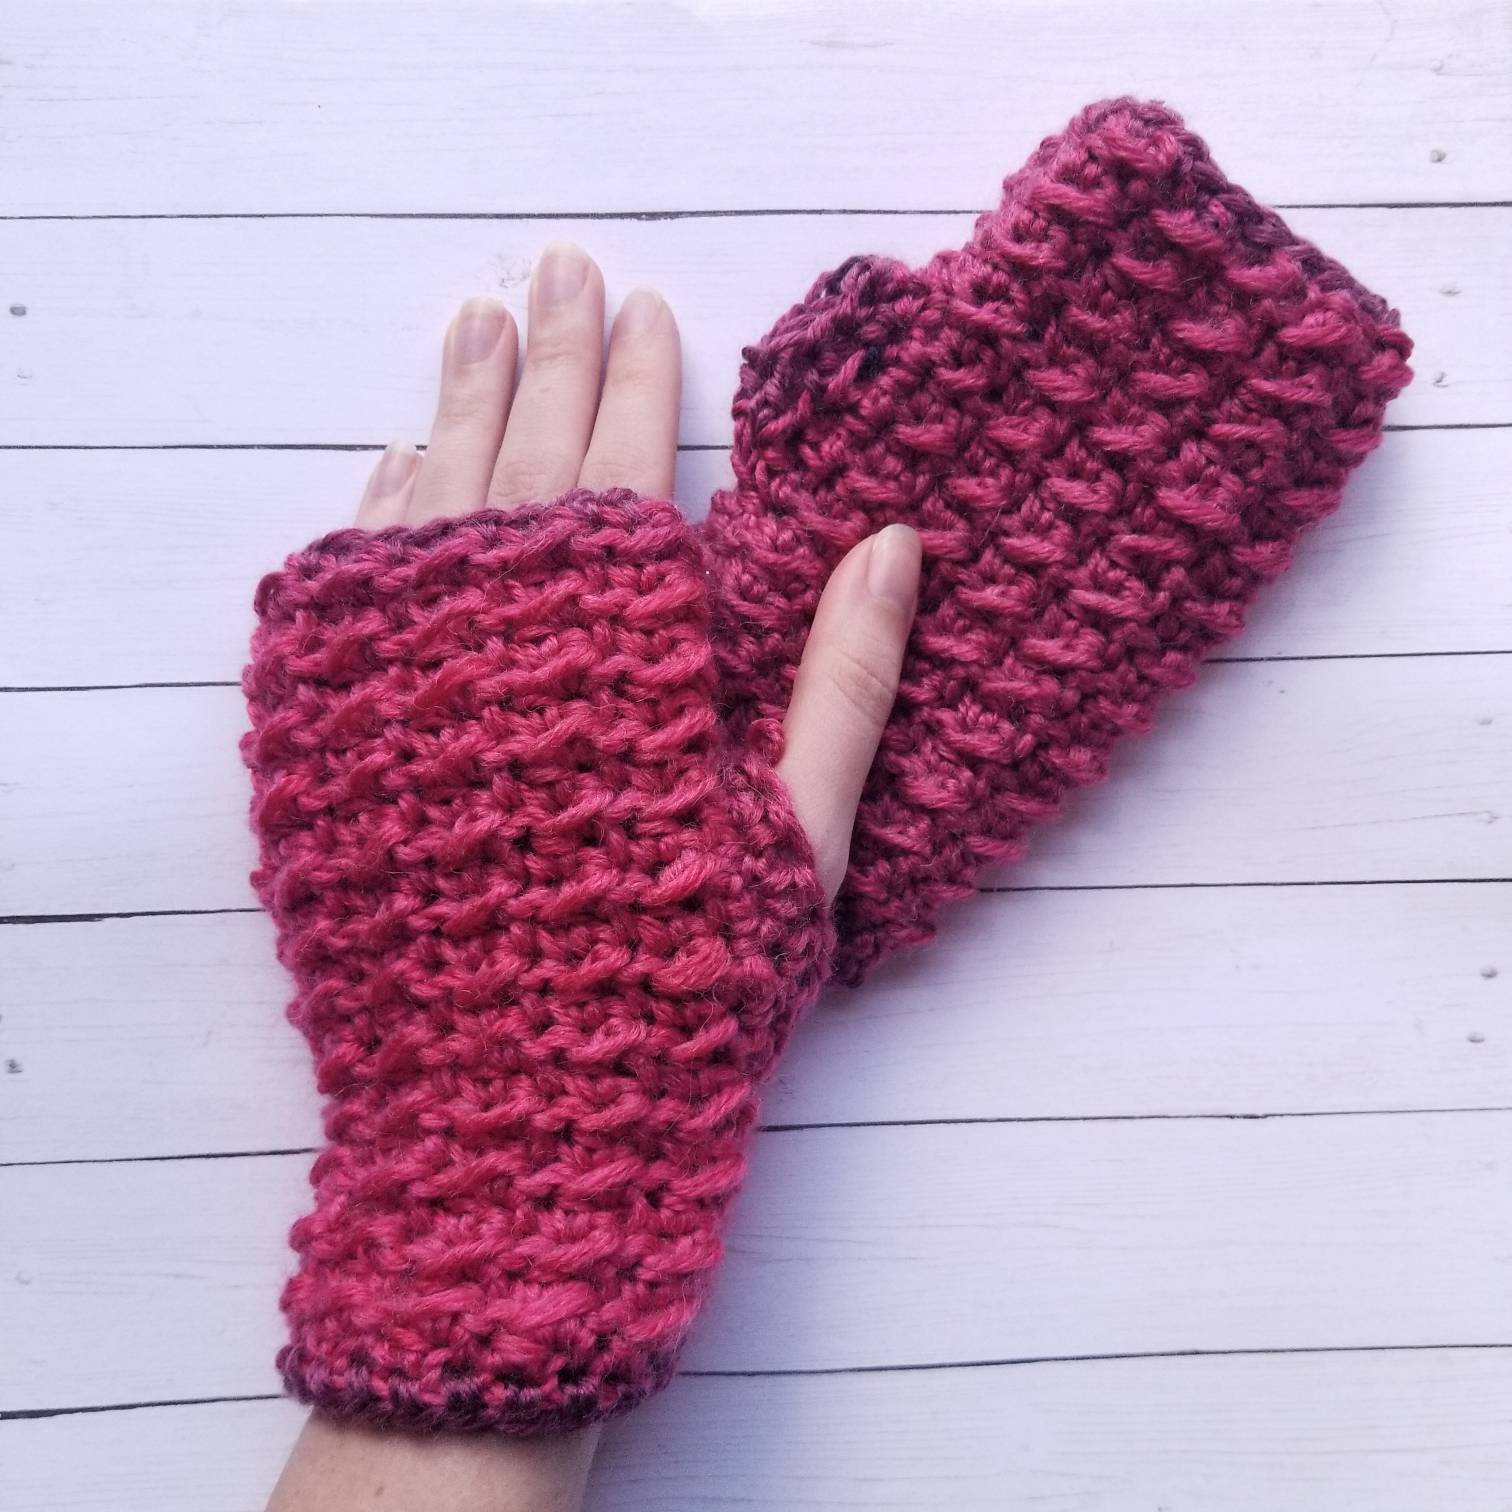 Crochet Wrist Warmers Free Pattern Crochet Fingerless Gloves Fingerless Mittens Gift For Her Etsy